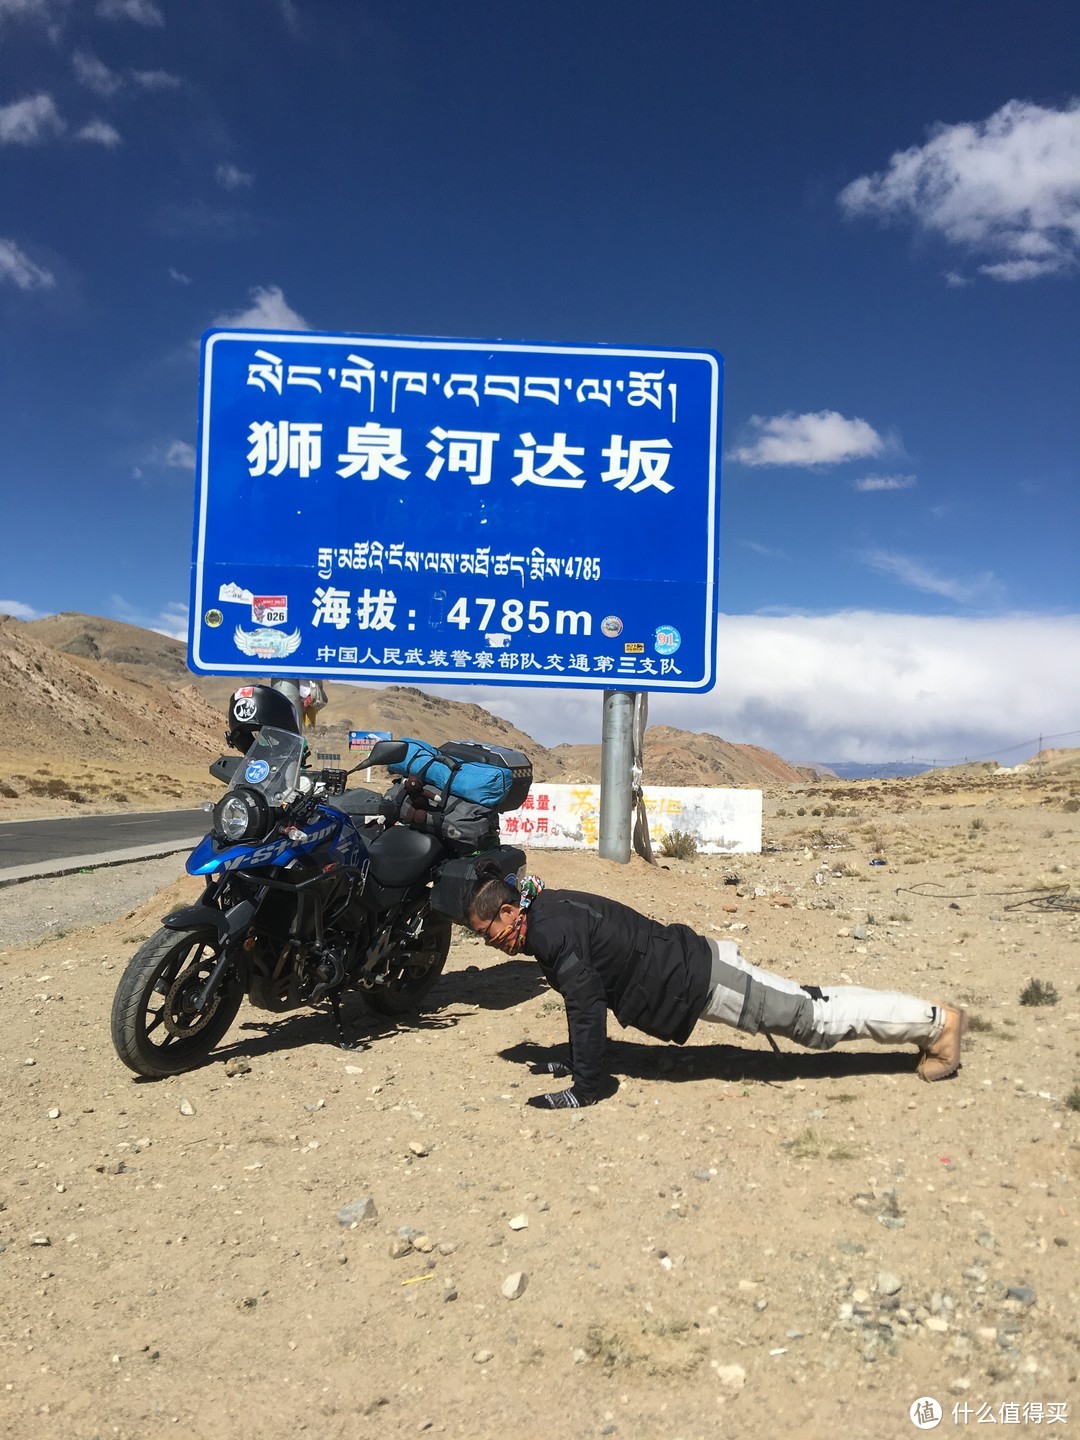 66天1人1车21000公里环中国（地图左部分）